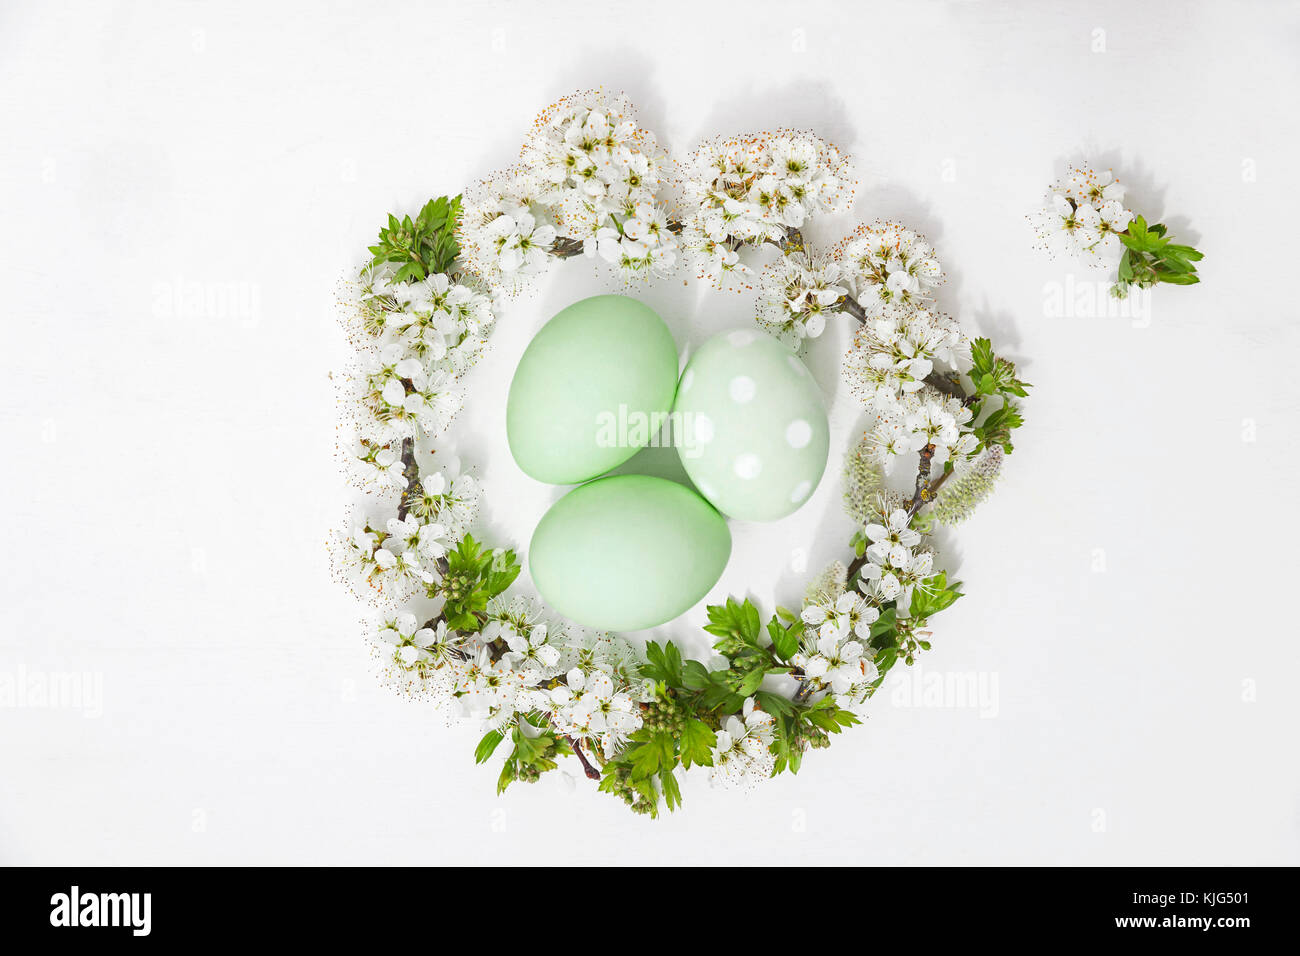 Teint en vert à la main en nid d'oeufs de Pâques fleurs de cerisier et saule sur fond blanc Banque D'Images